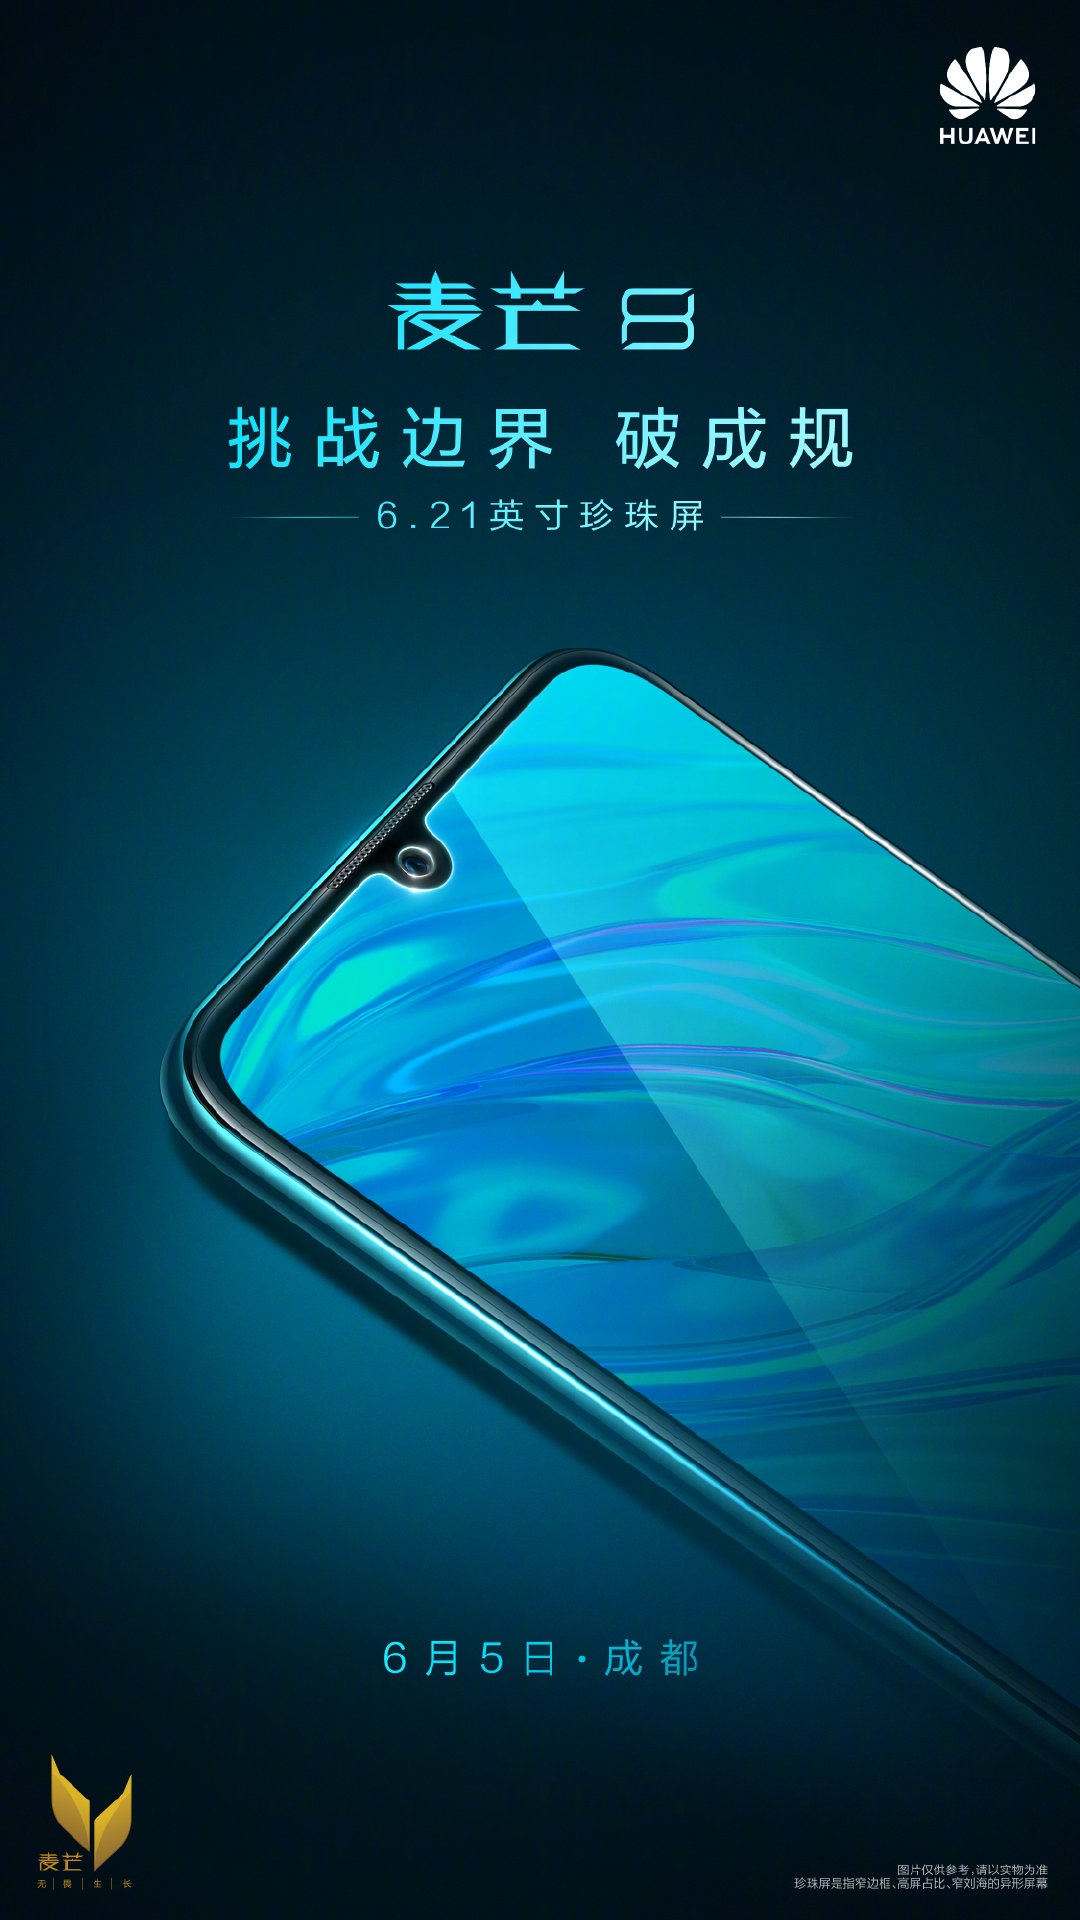 Huawei Maimang 8 Launch Teaser